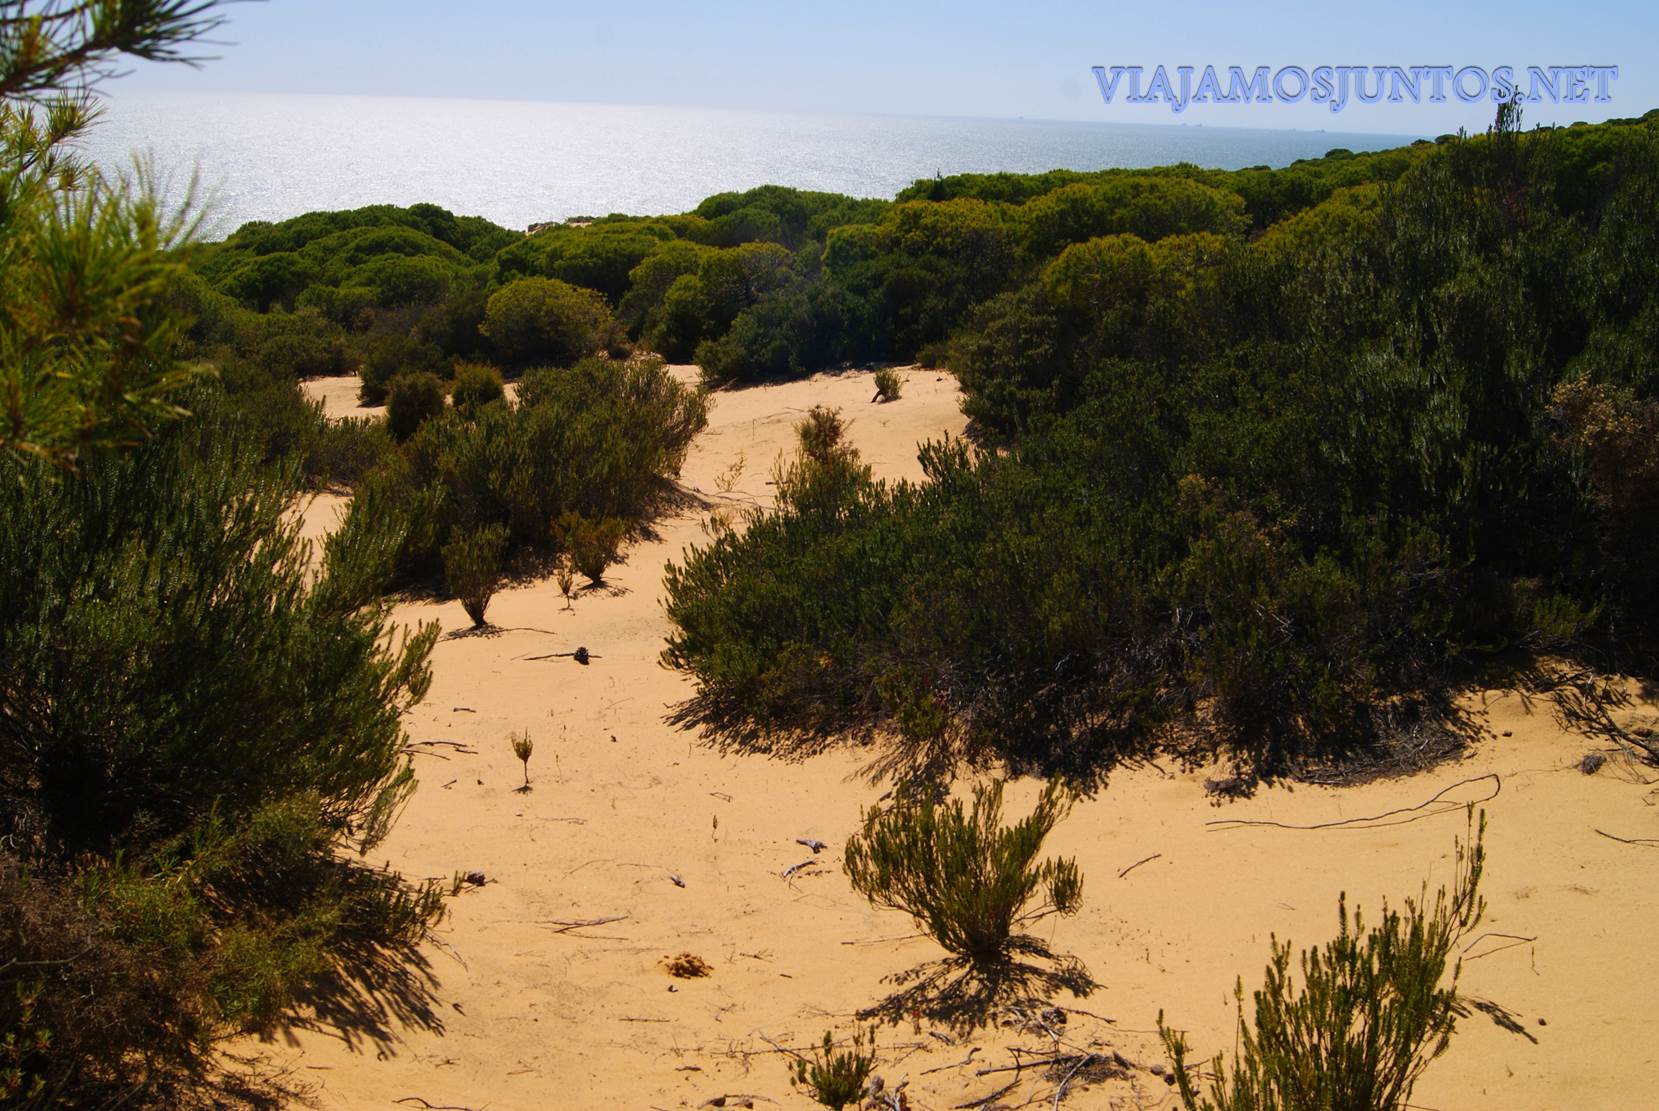 Doñana, asperillo, laguna Jaral, parque natural, parque nacional, parque dunar, dunas, dunas fijas, huelva, andalucia, acantilado, senderismo, rutas